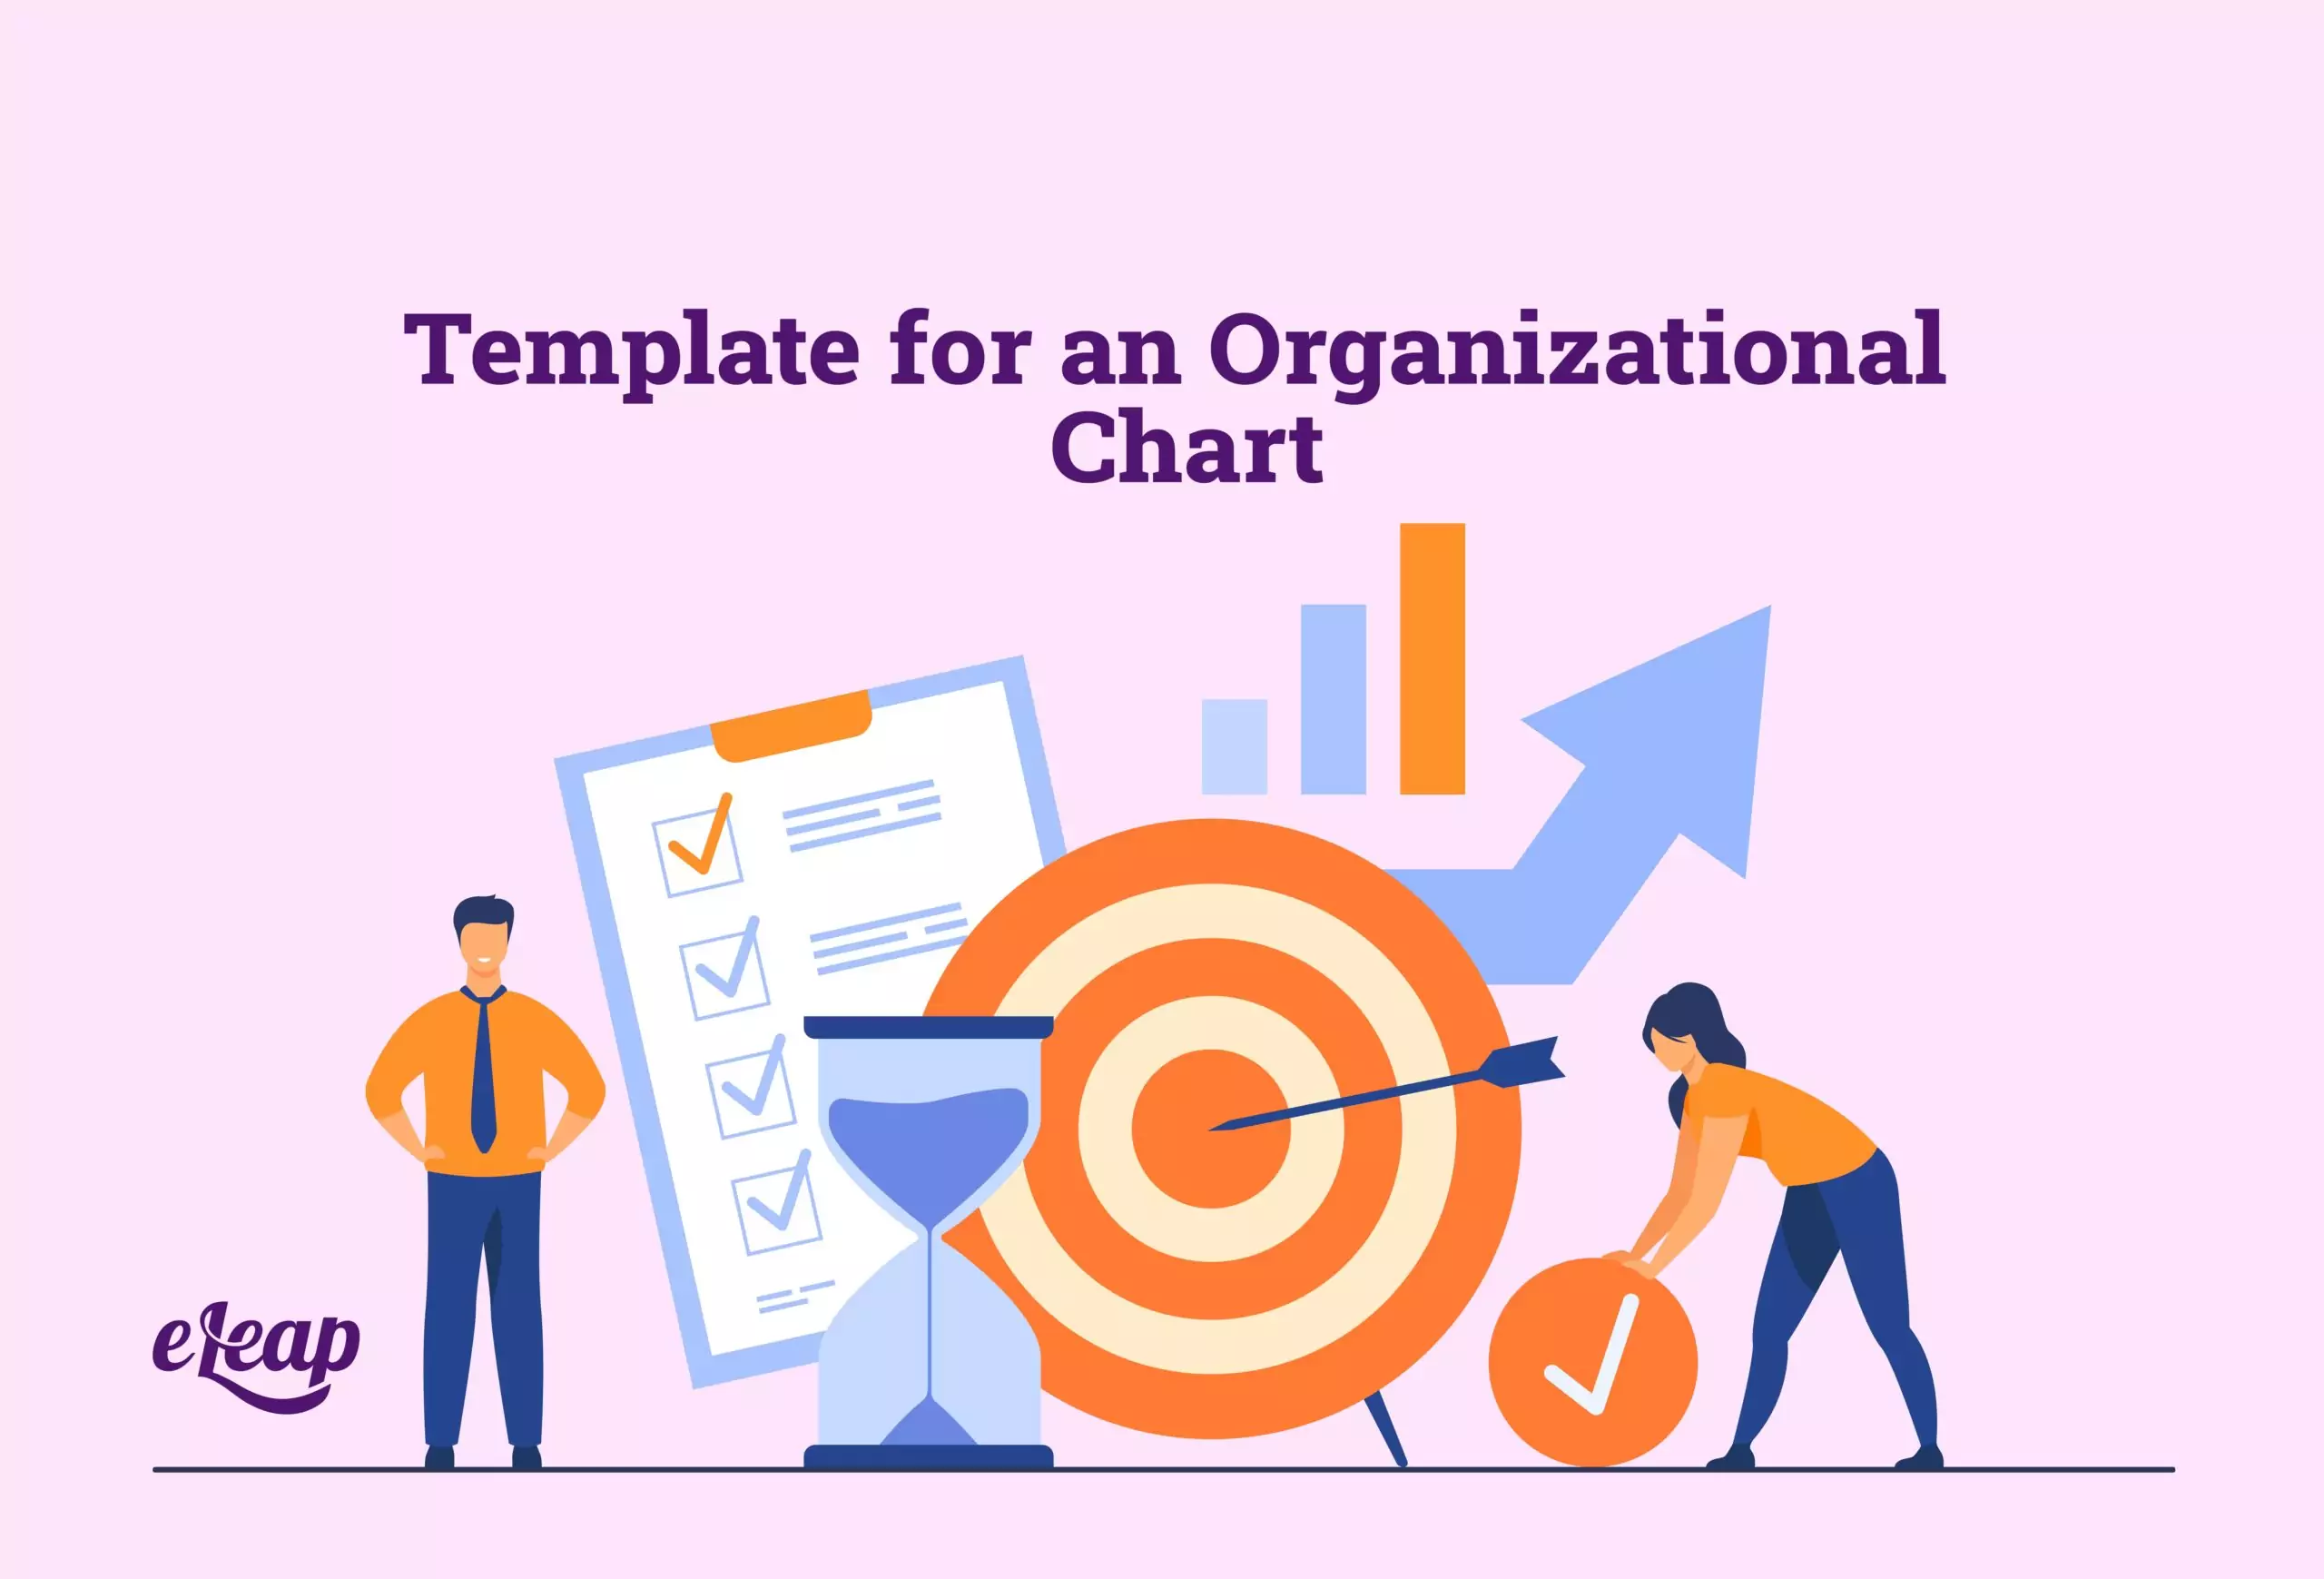 Template for an Organizational Chart